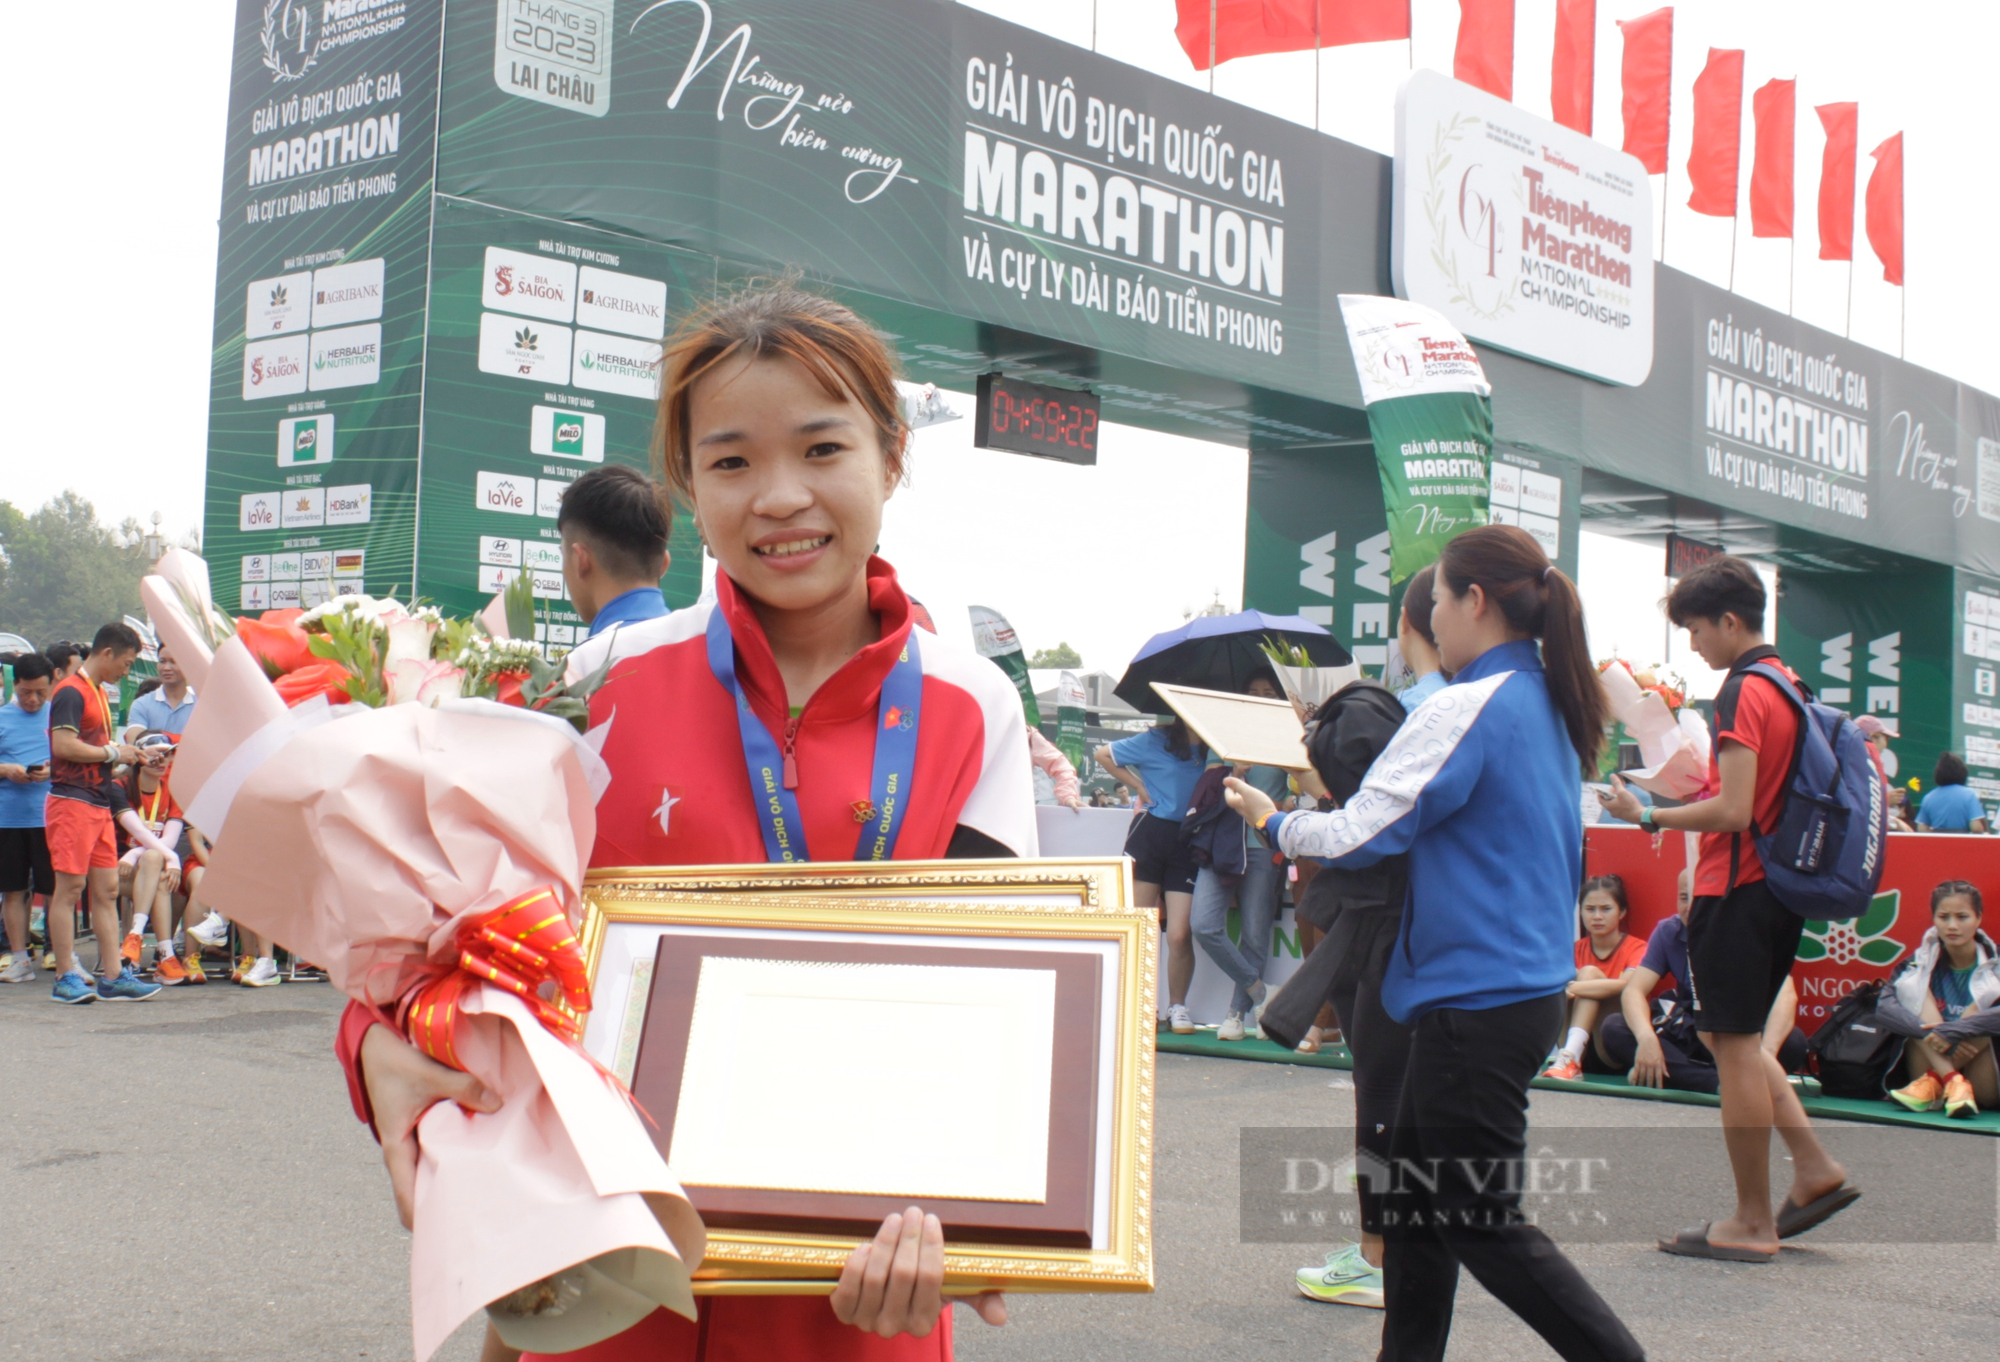 Giải vô địch quốc gia Marathon báo Tiền Phong lần thứ 64: Sôi nổi, gay cấn ngay từ phút đầu - Ảnh 4.